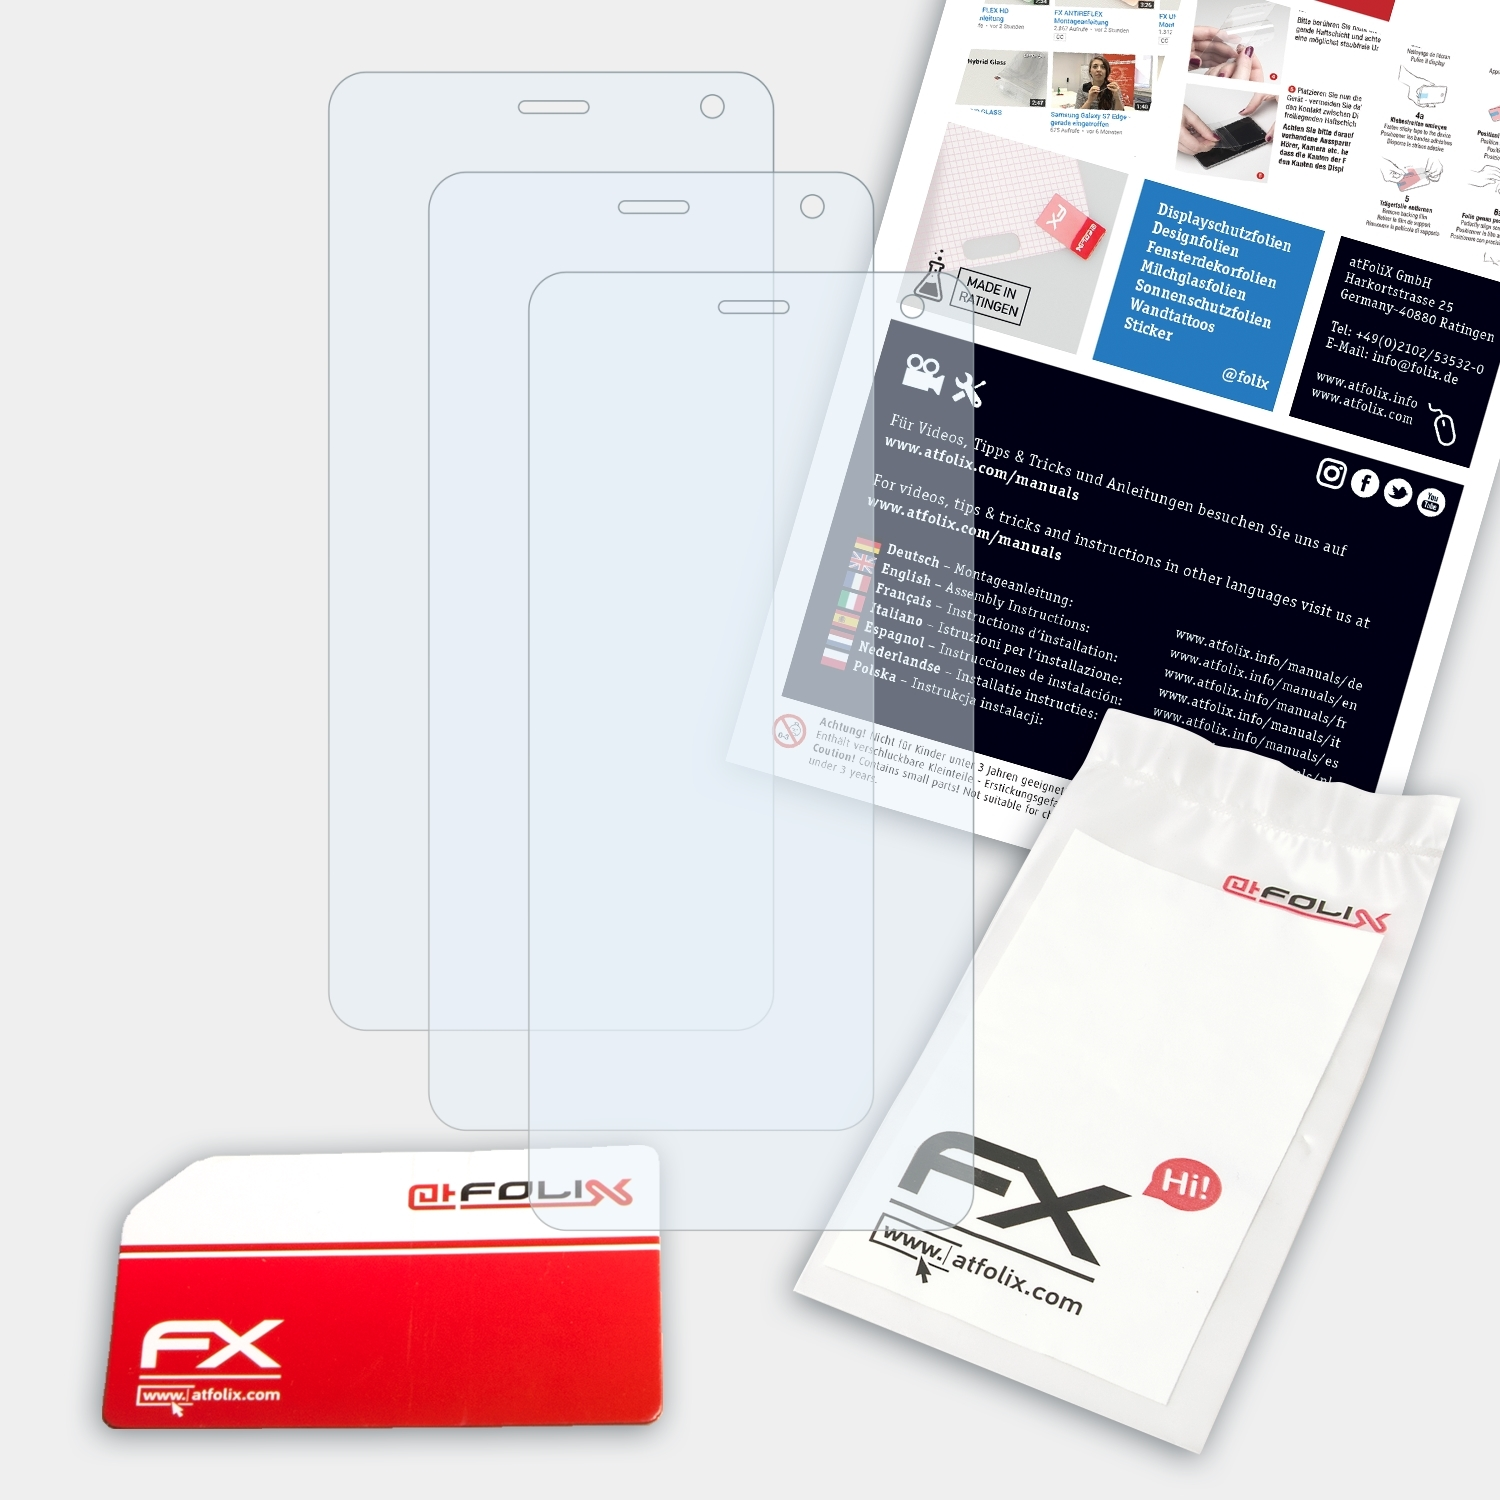 ATFOLIX 3x FX-Clear Displayschutz(für RugGear RG650)